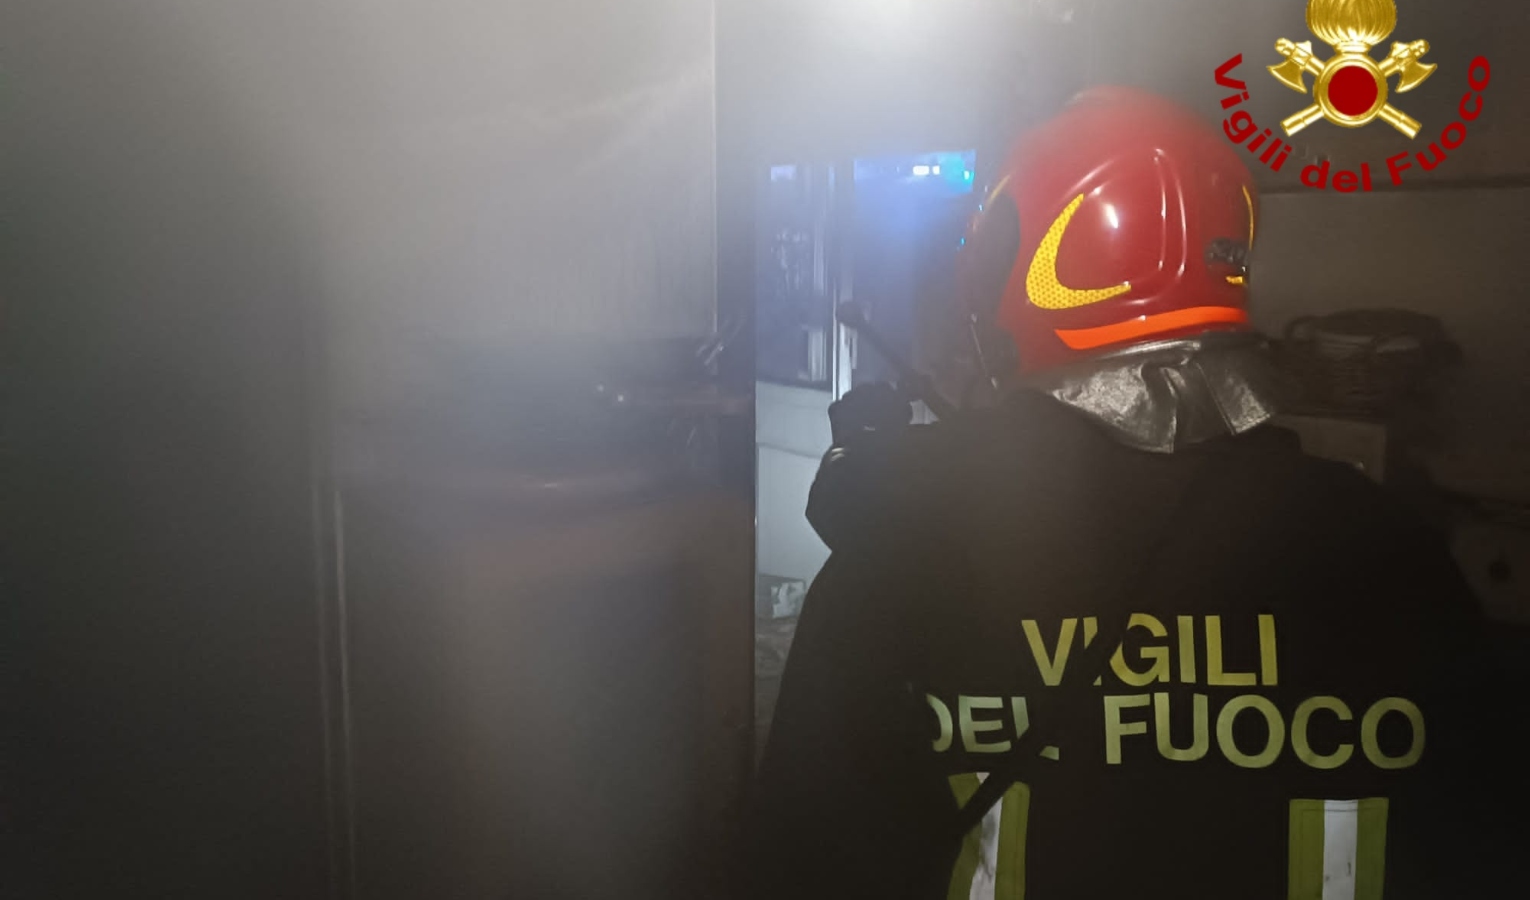 Genova, la cena va a fuoco e incendia la cucina: paura per due giovani